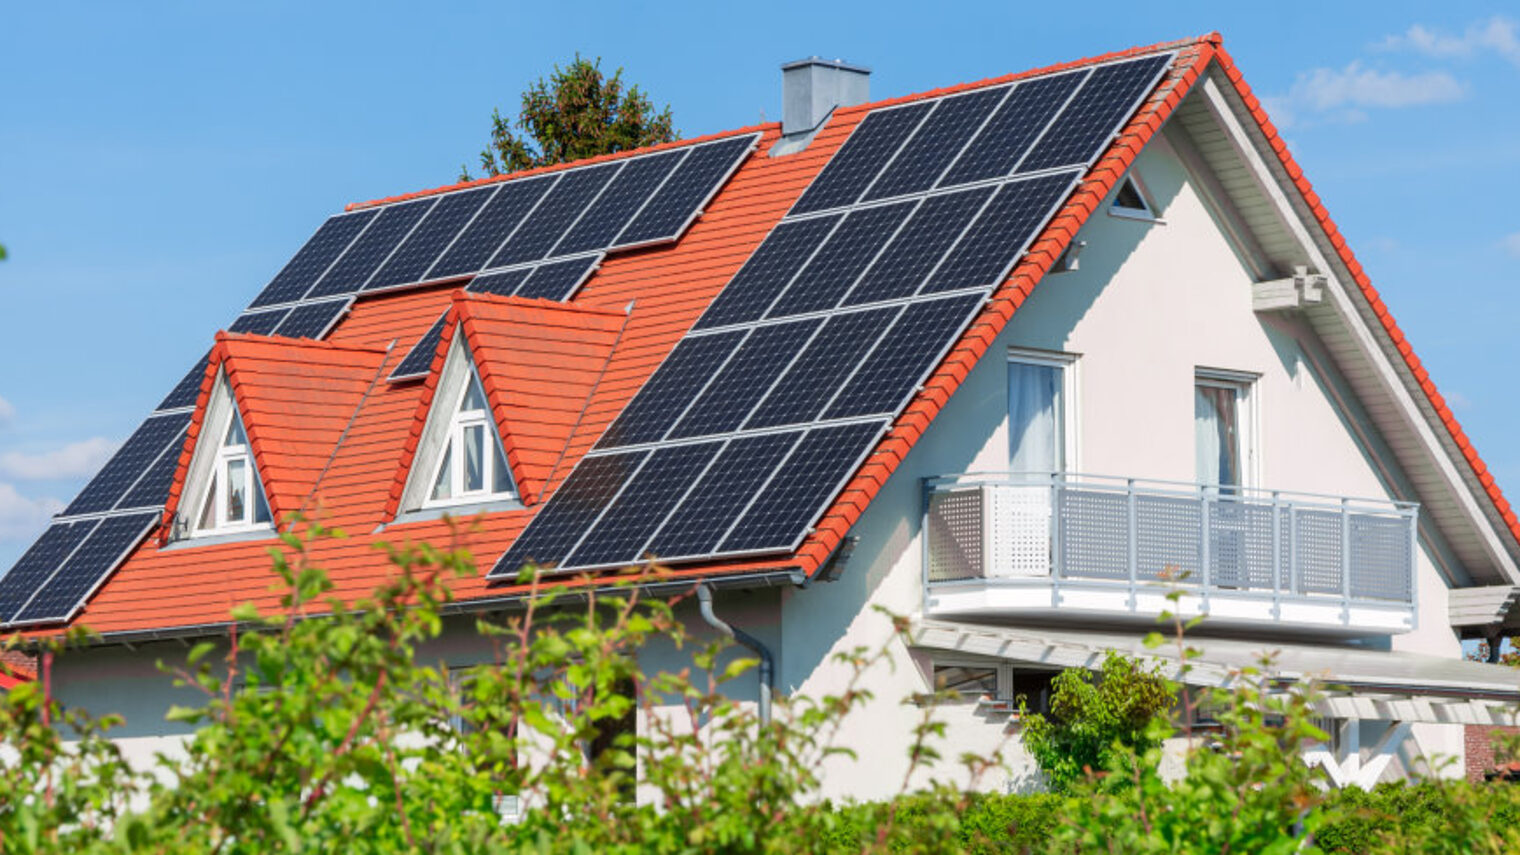 Dach eines Wohnhauses mit Solarpanelen.